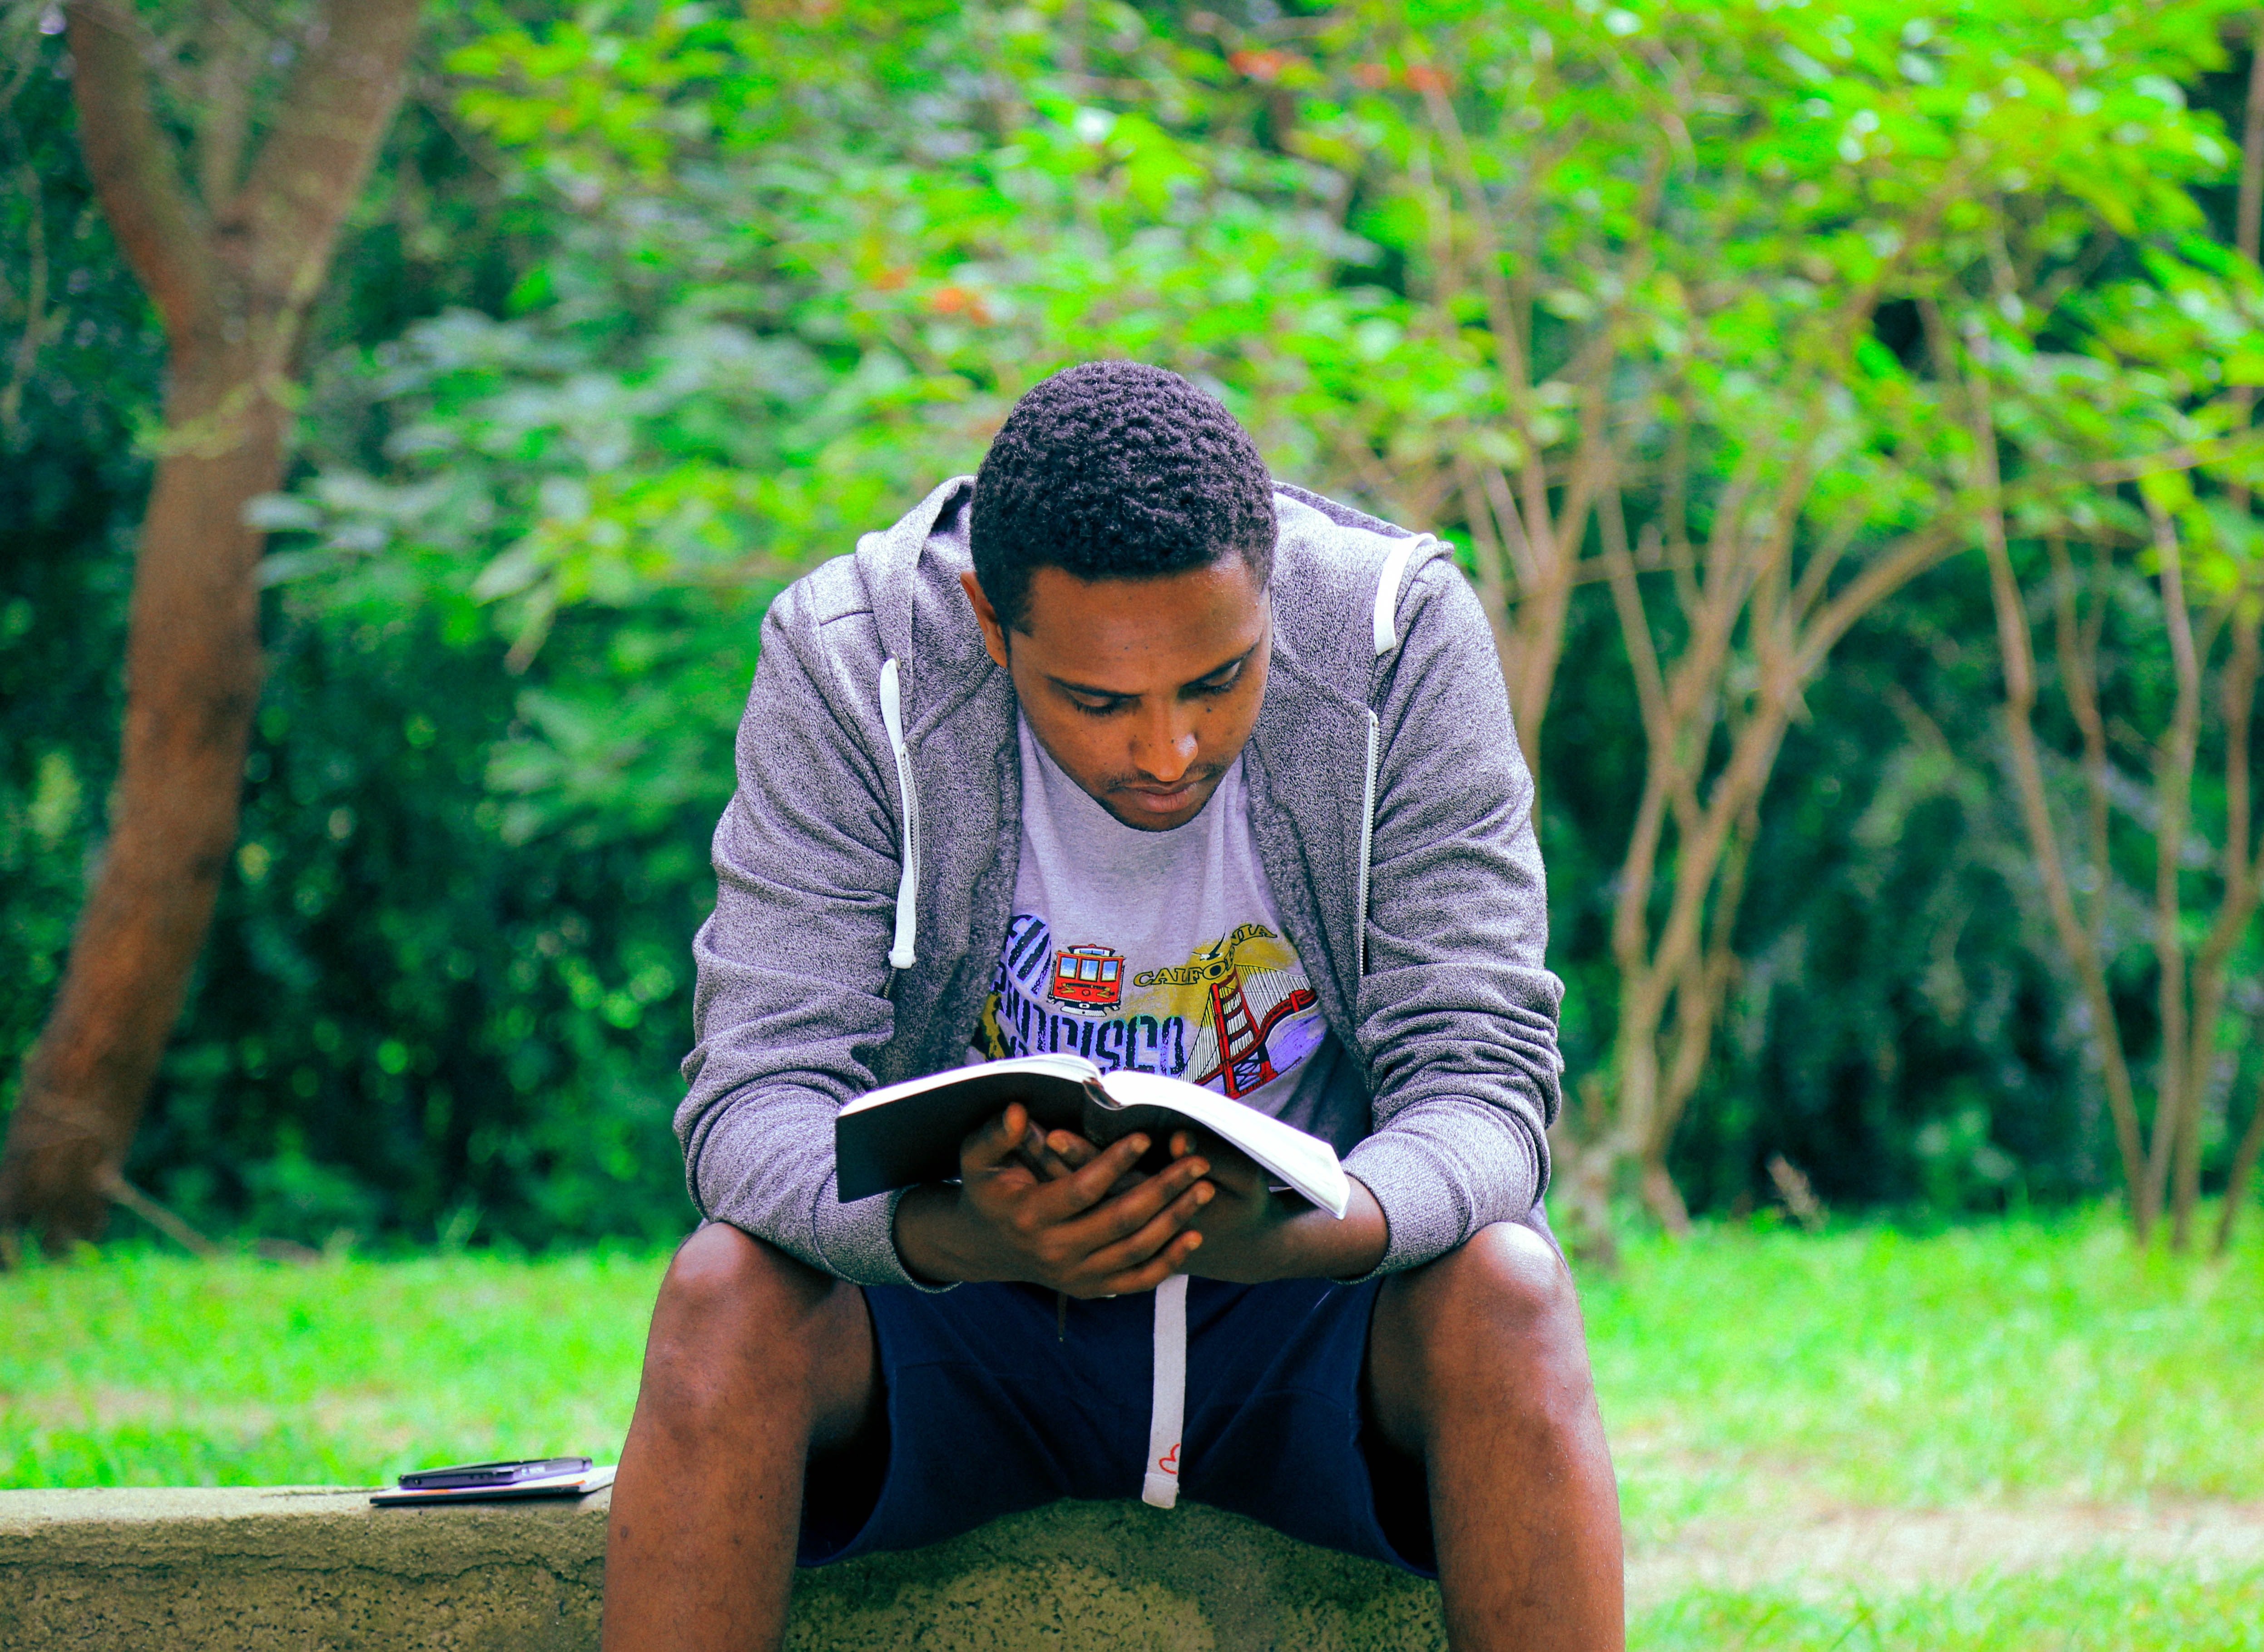 Jovens que leem a Bíblia regularmente ficam menos estressados, diz novo estudo